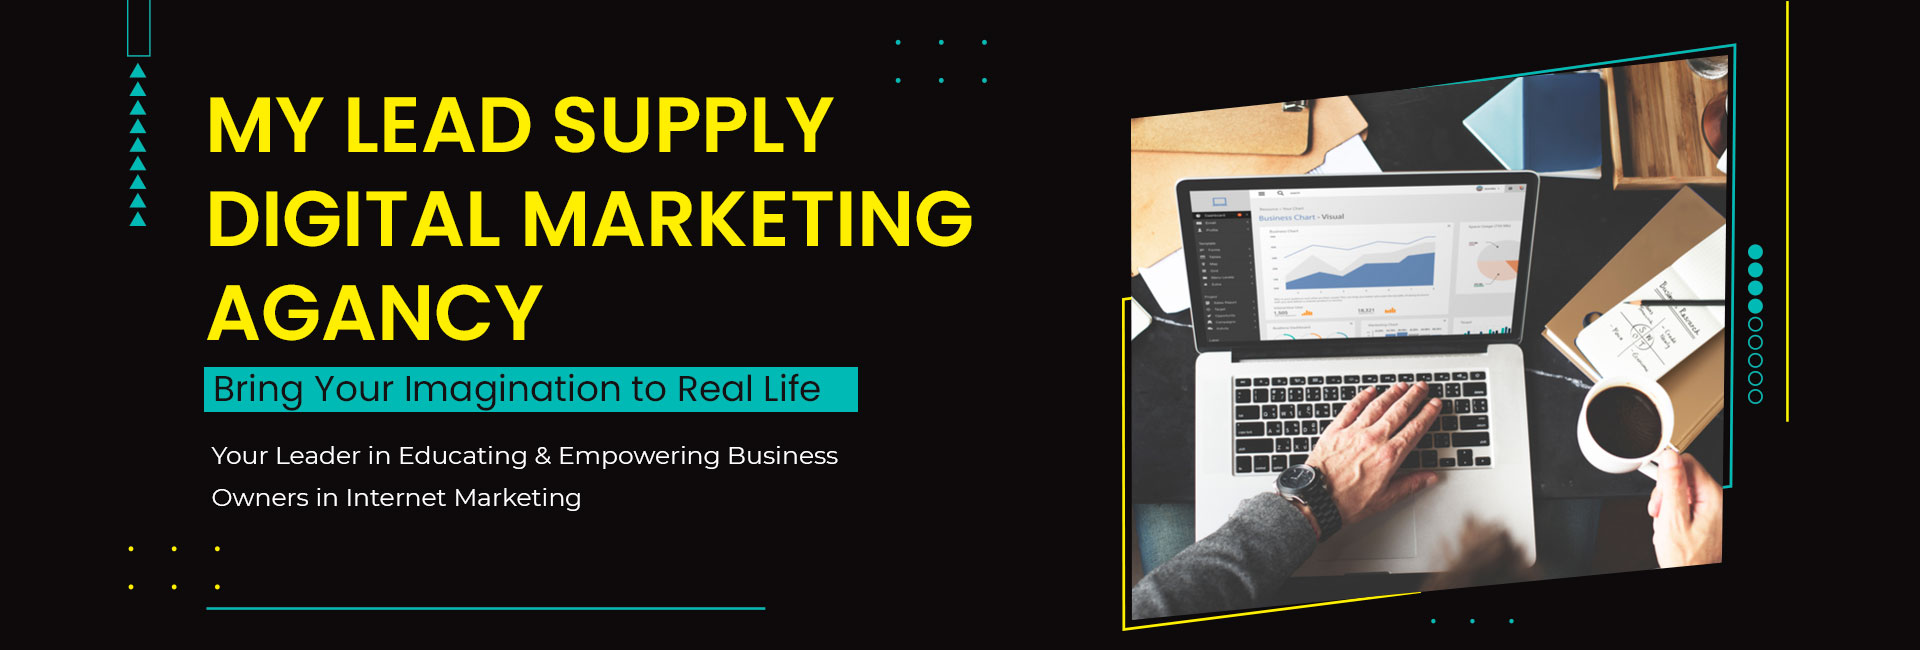 My Lead Supply Digital Marketing